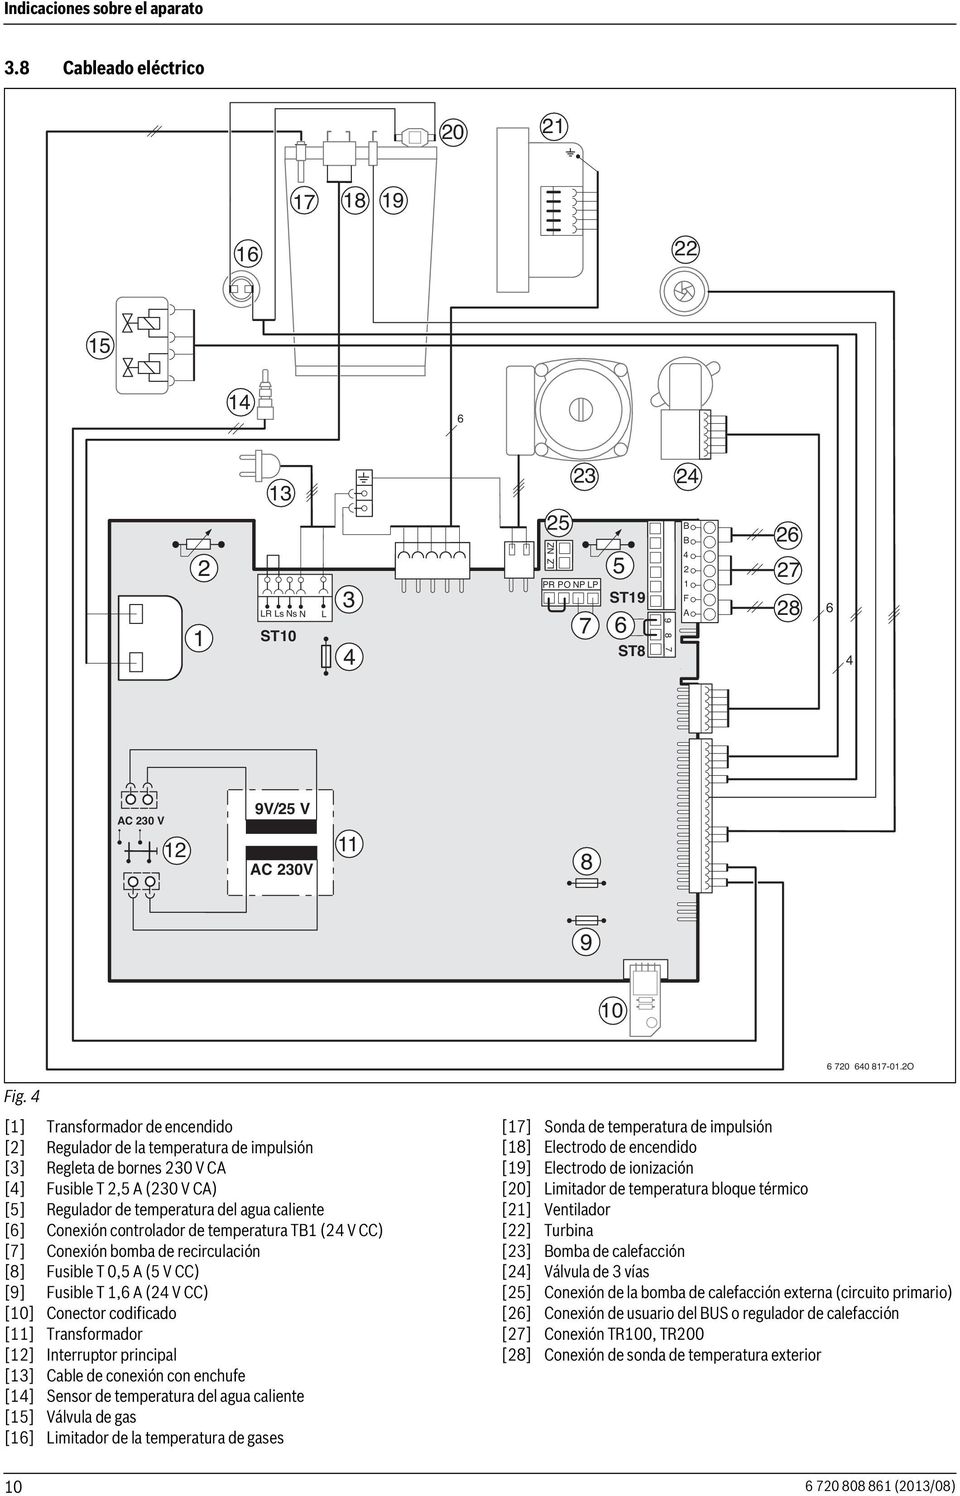 4 [] Transformador de encendido [2] Regulador de la temperatura de impulsión [3] Regleta de bornes 230 V CA [4] Fusible T 2,5 A (230 V CA) [5] Regulador de temperatura del agua caliente [6] Conexión